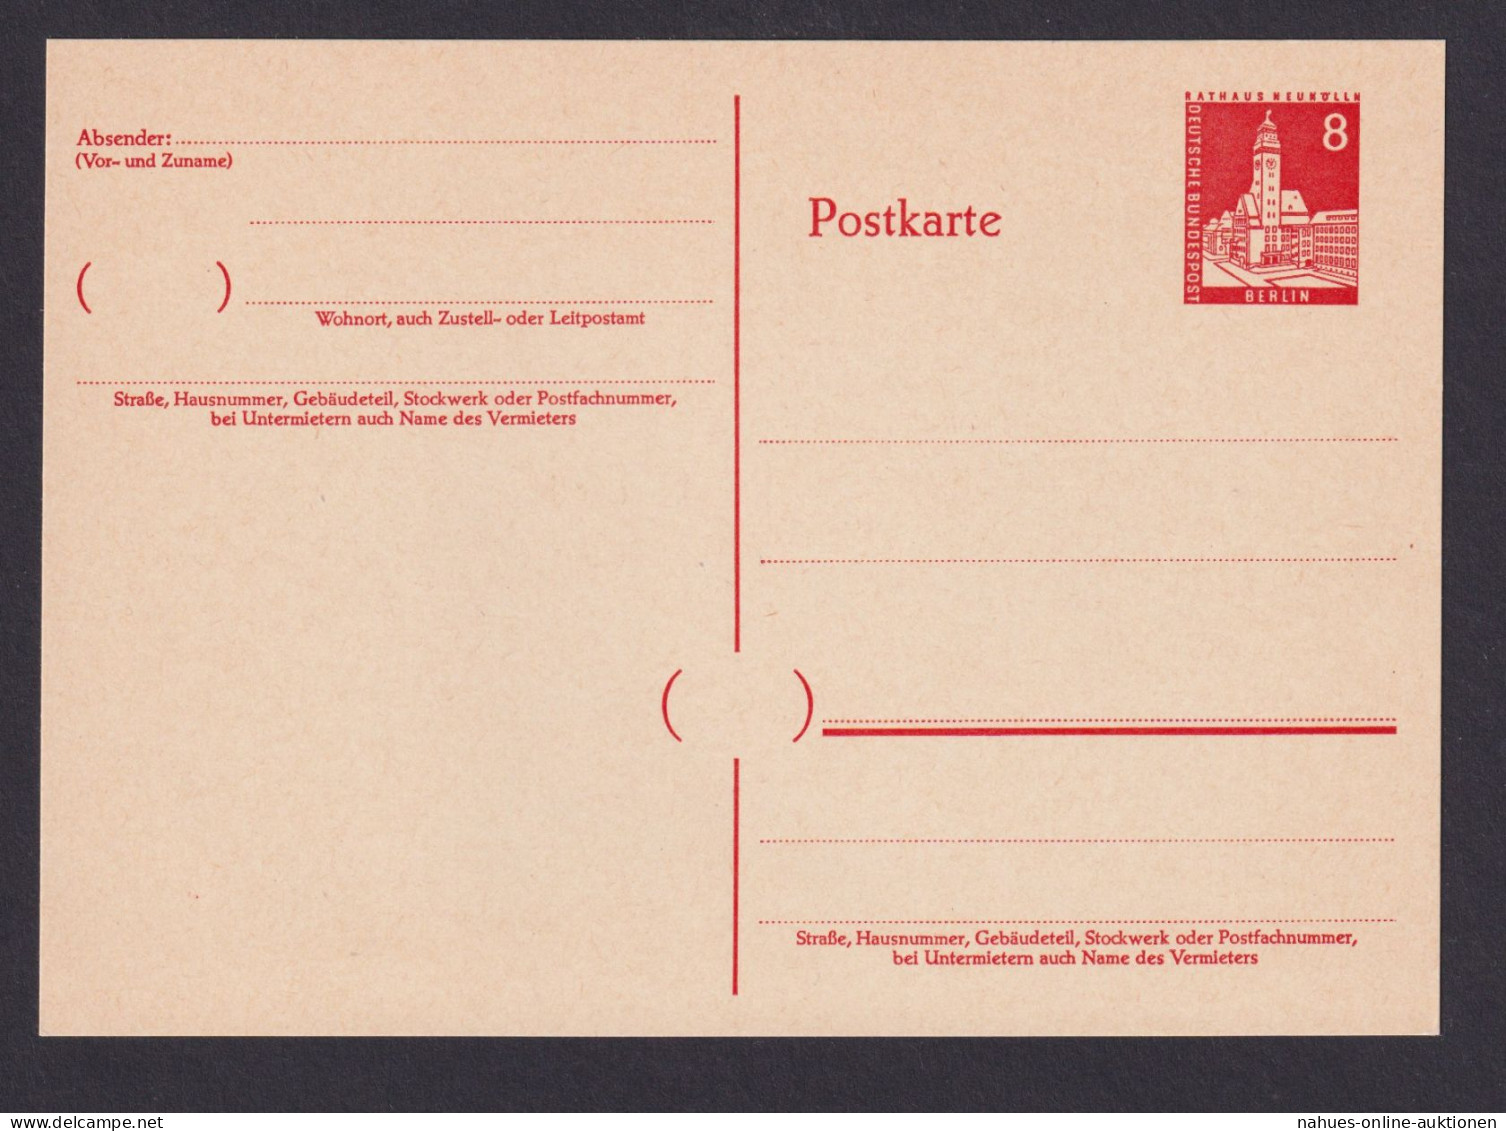 Briefmarken Berlin Ganzsache Bauten II P 44 Kat.-Wert 38,00 - Postcards - Used